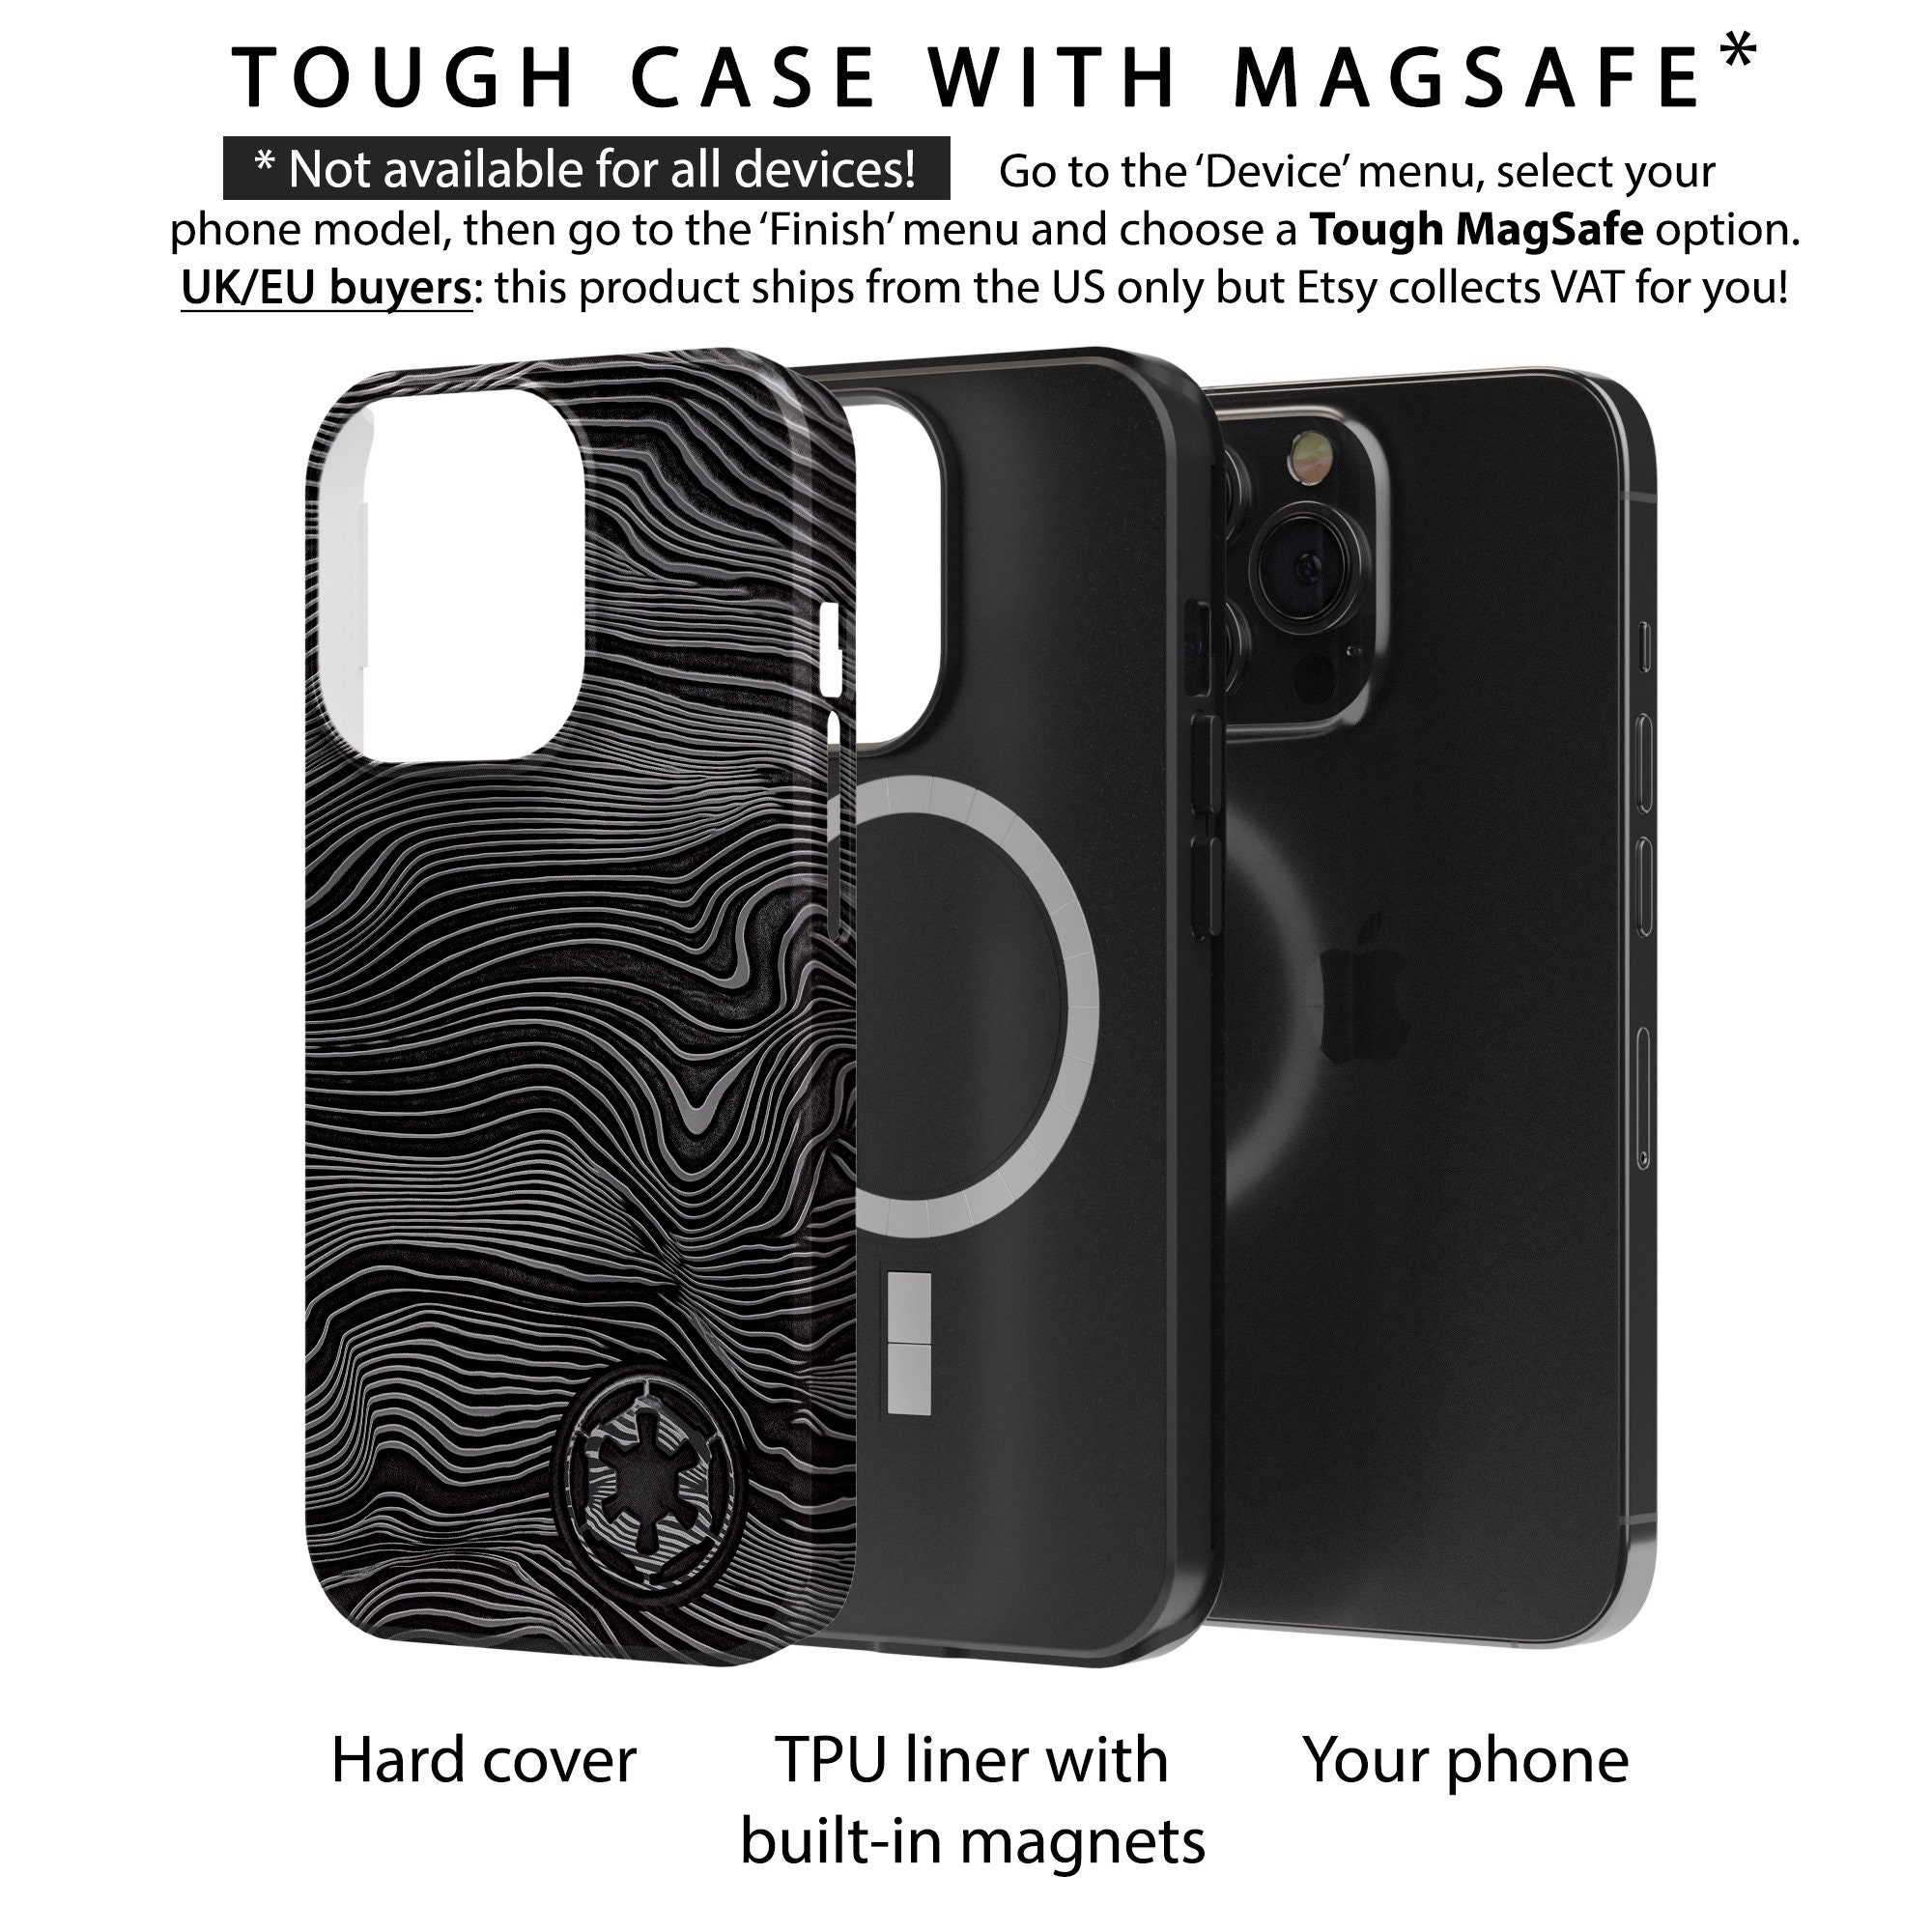 Review: Spigen iPhone 13 Tough Armor Case – The IT Nerd